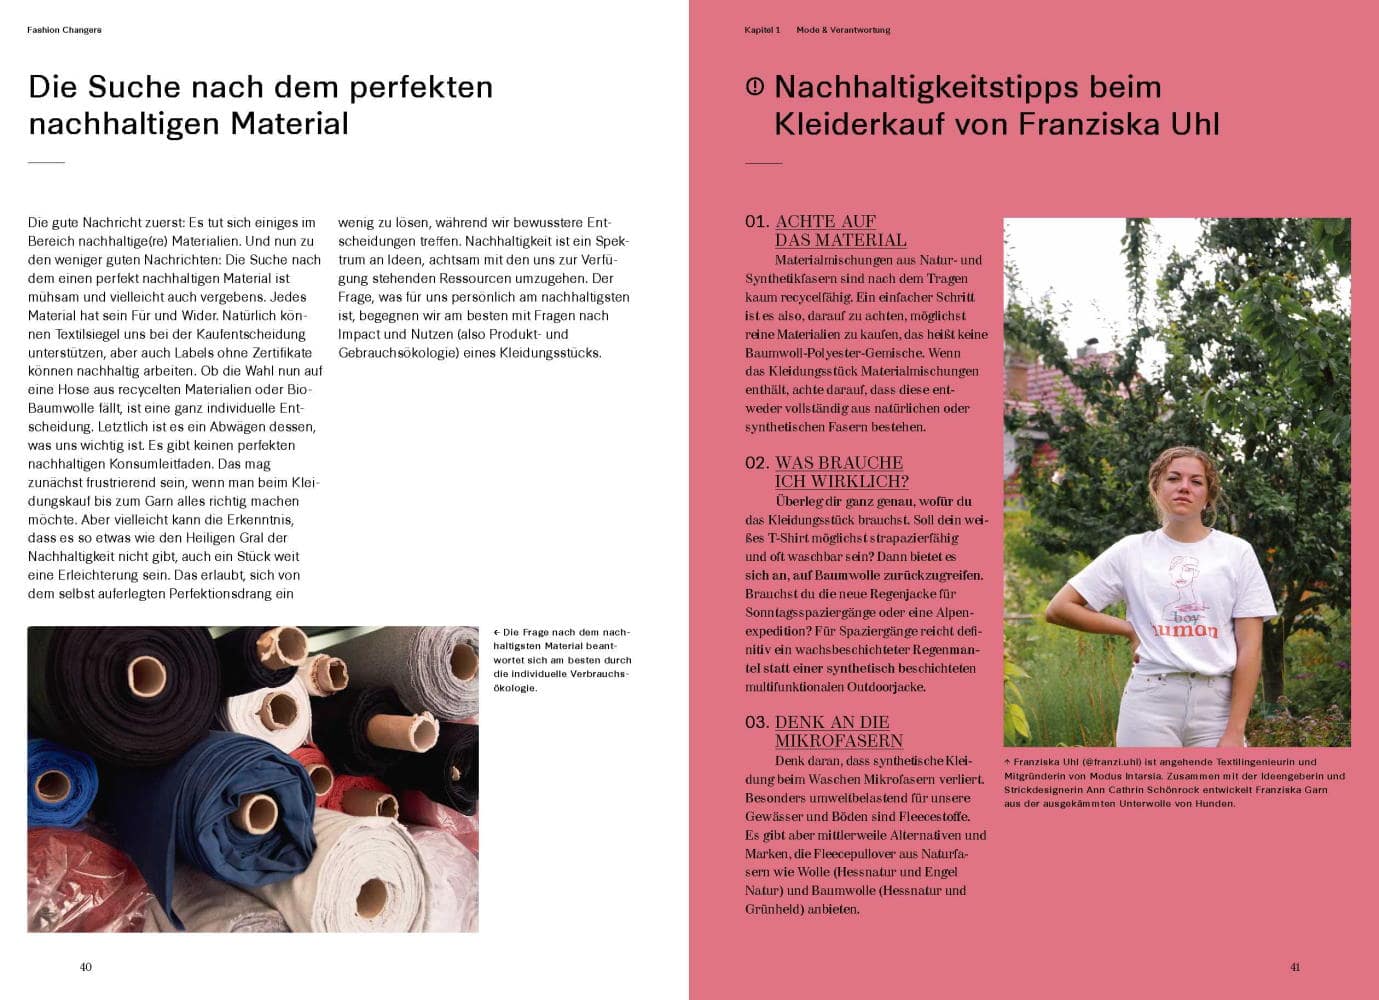 Einblick in das Buch. Die Suche nach dem perfekten Material & Nachhaltigkeitstipps beim Kleiderkauf von Franziska Uhl.